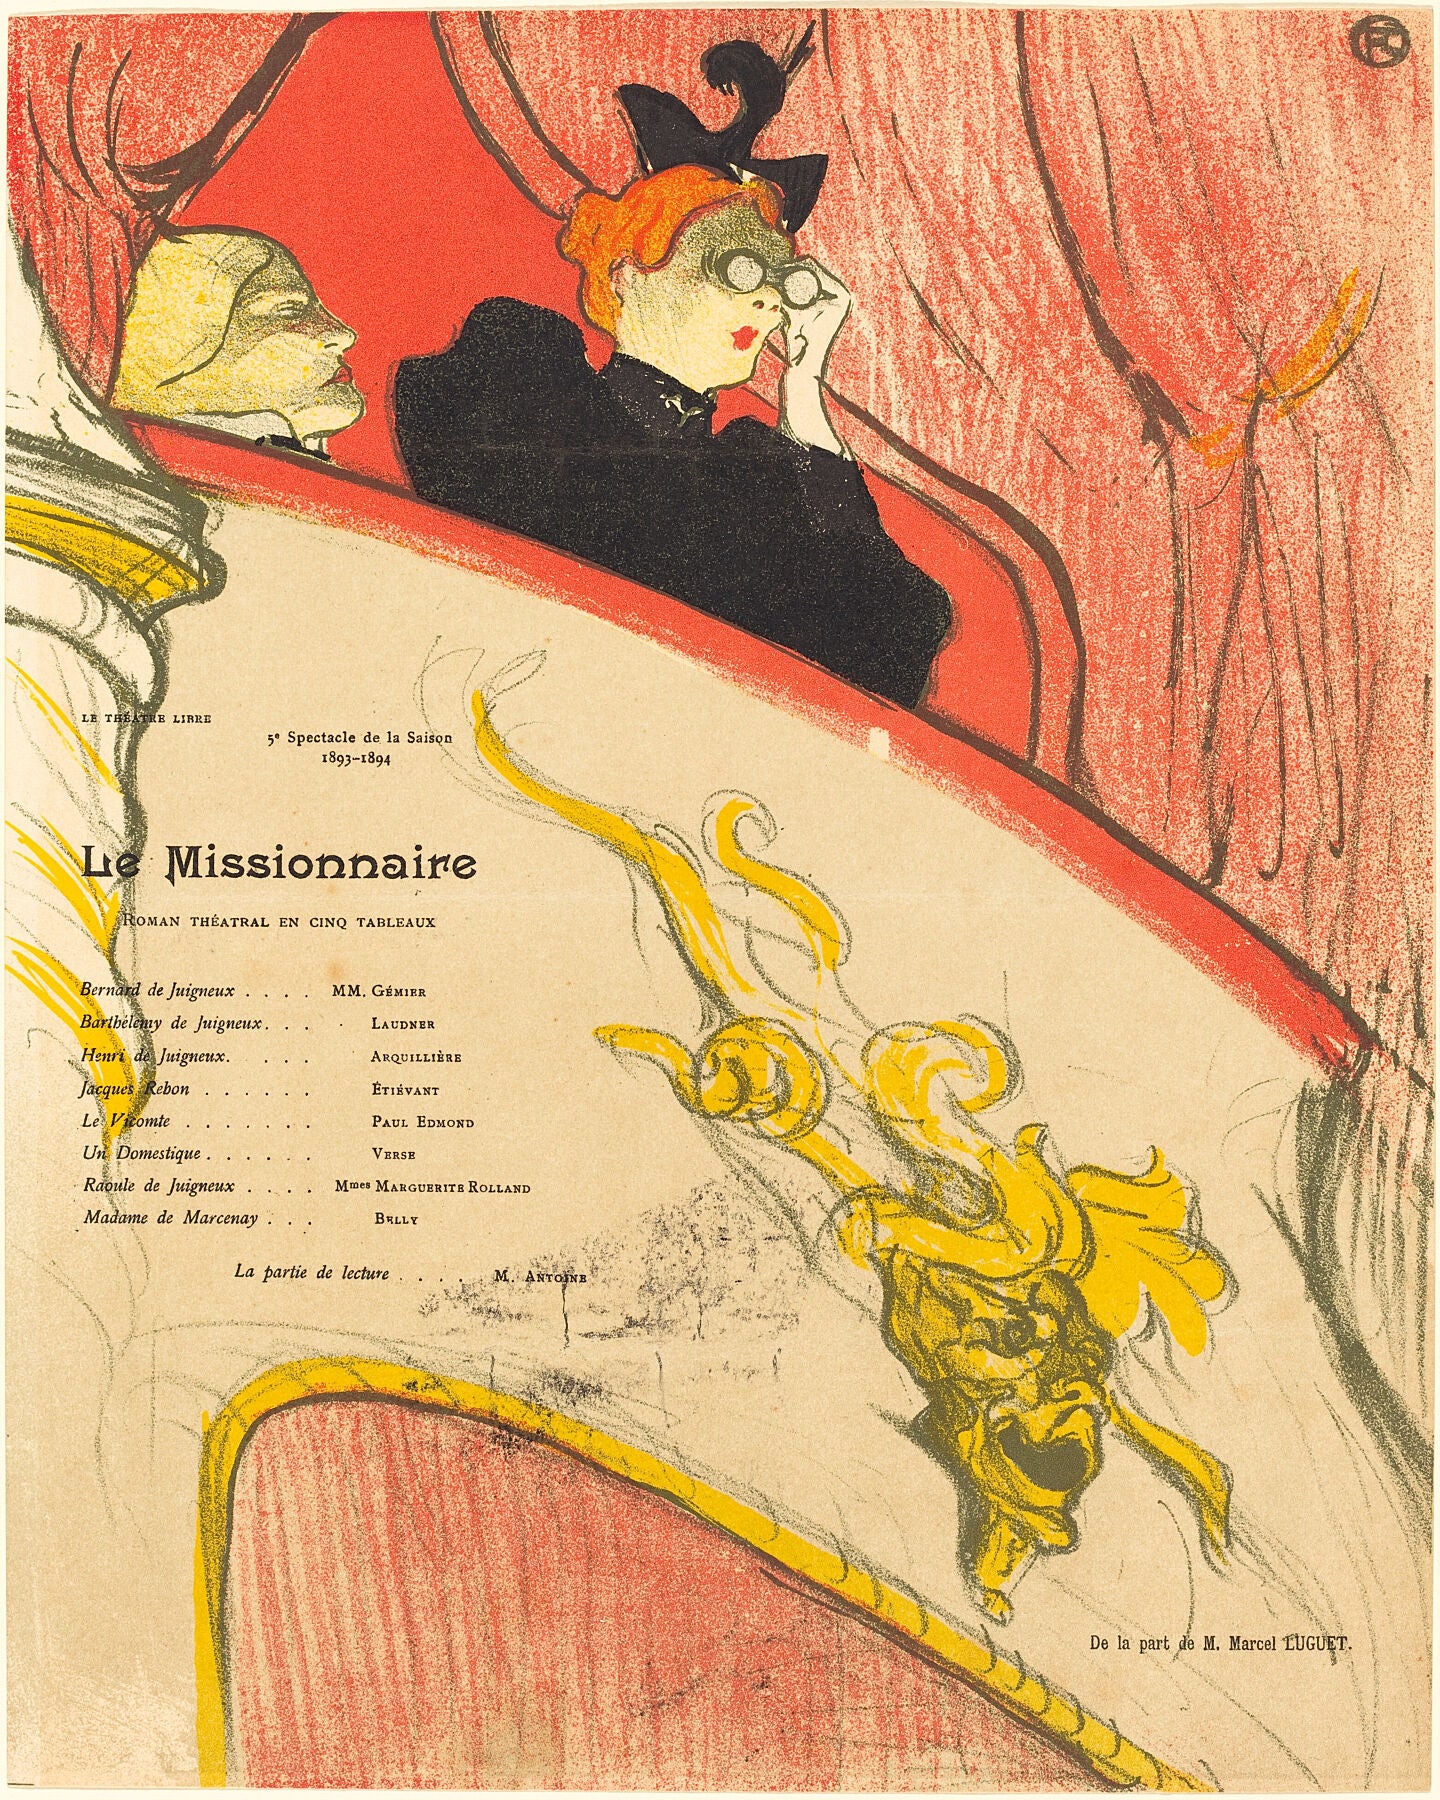 Le Missionnaire by Henri de Toulouse-Lautrec - 1894